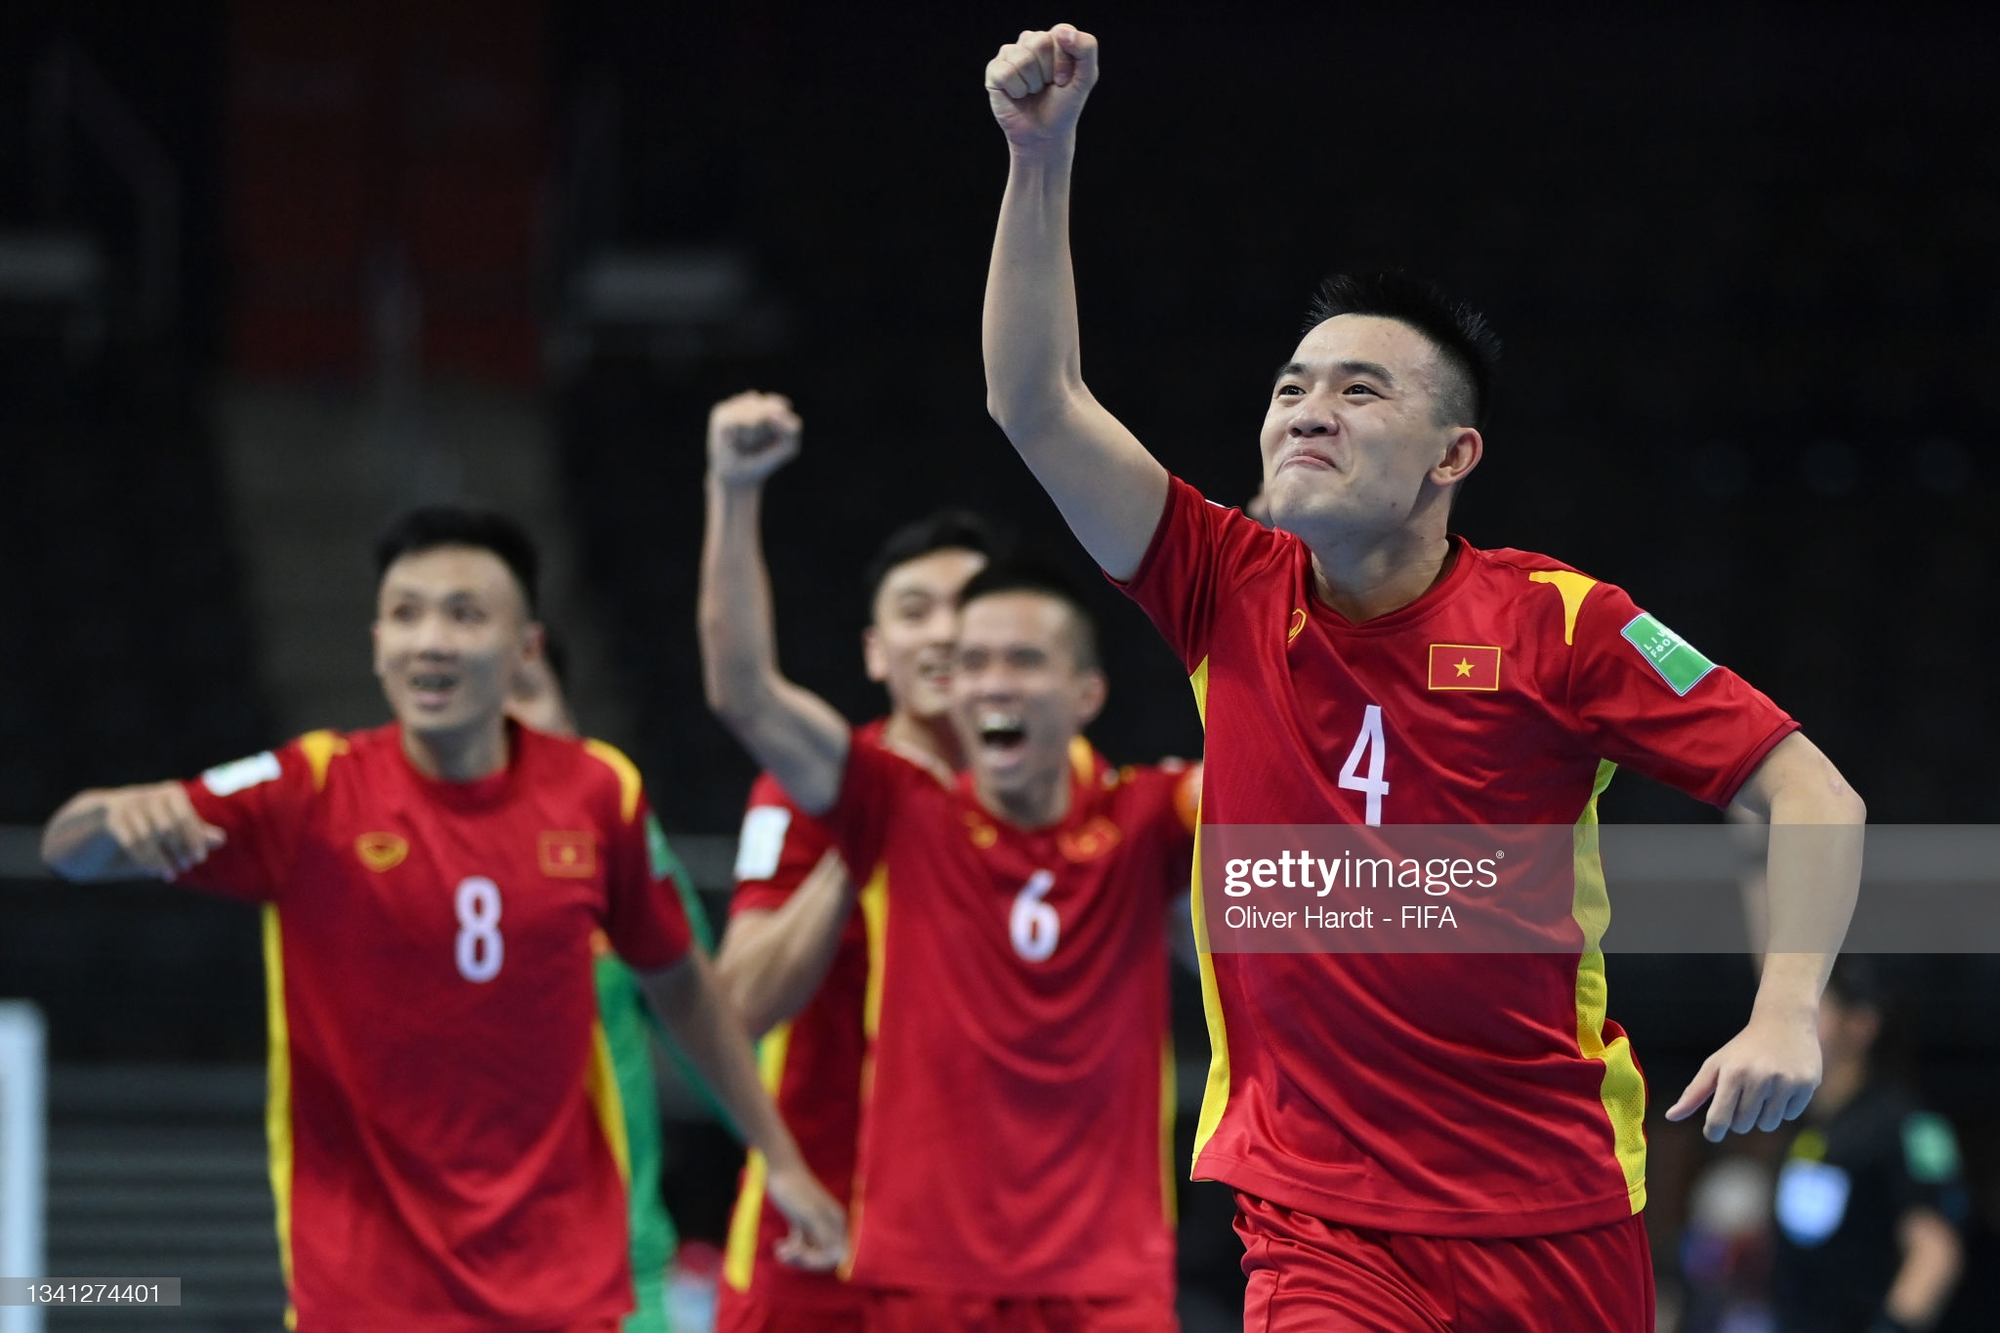 Choáng ngợp trước kỳ tích của ĐT Việt Nam tại World Cup, báo Trung Quốc ngán ngẩm chê bai đội nhà